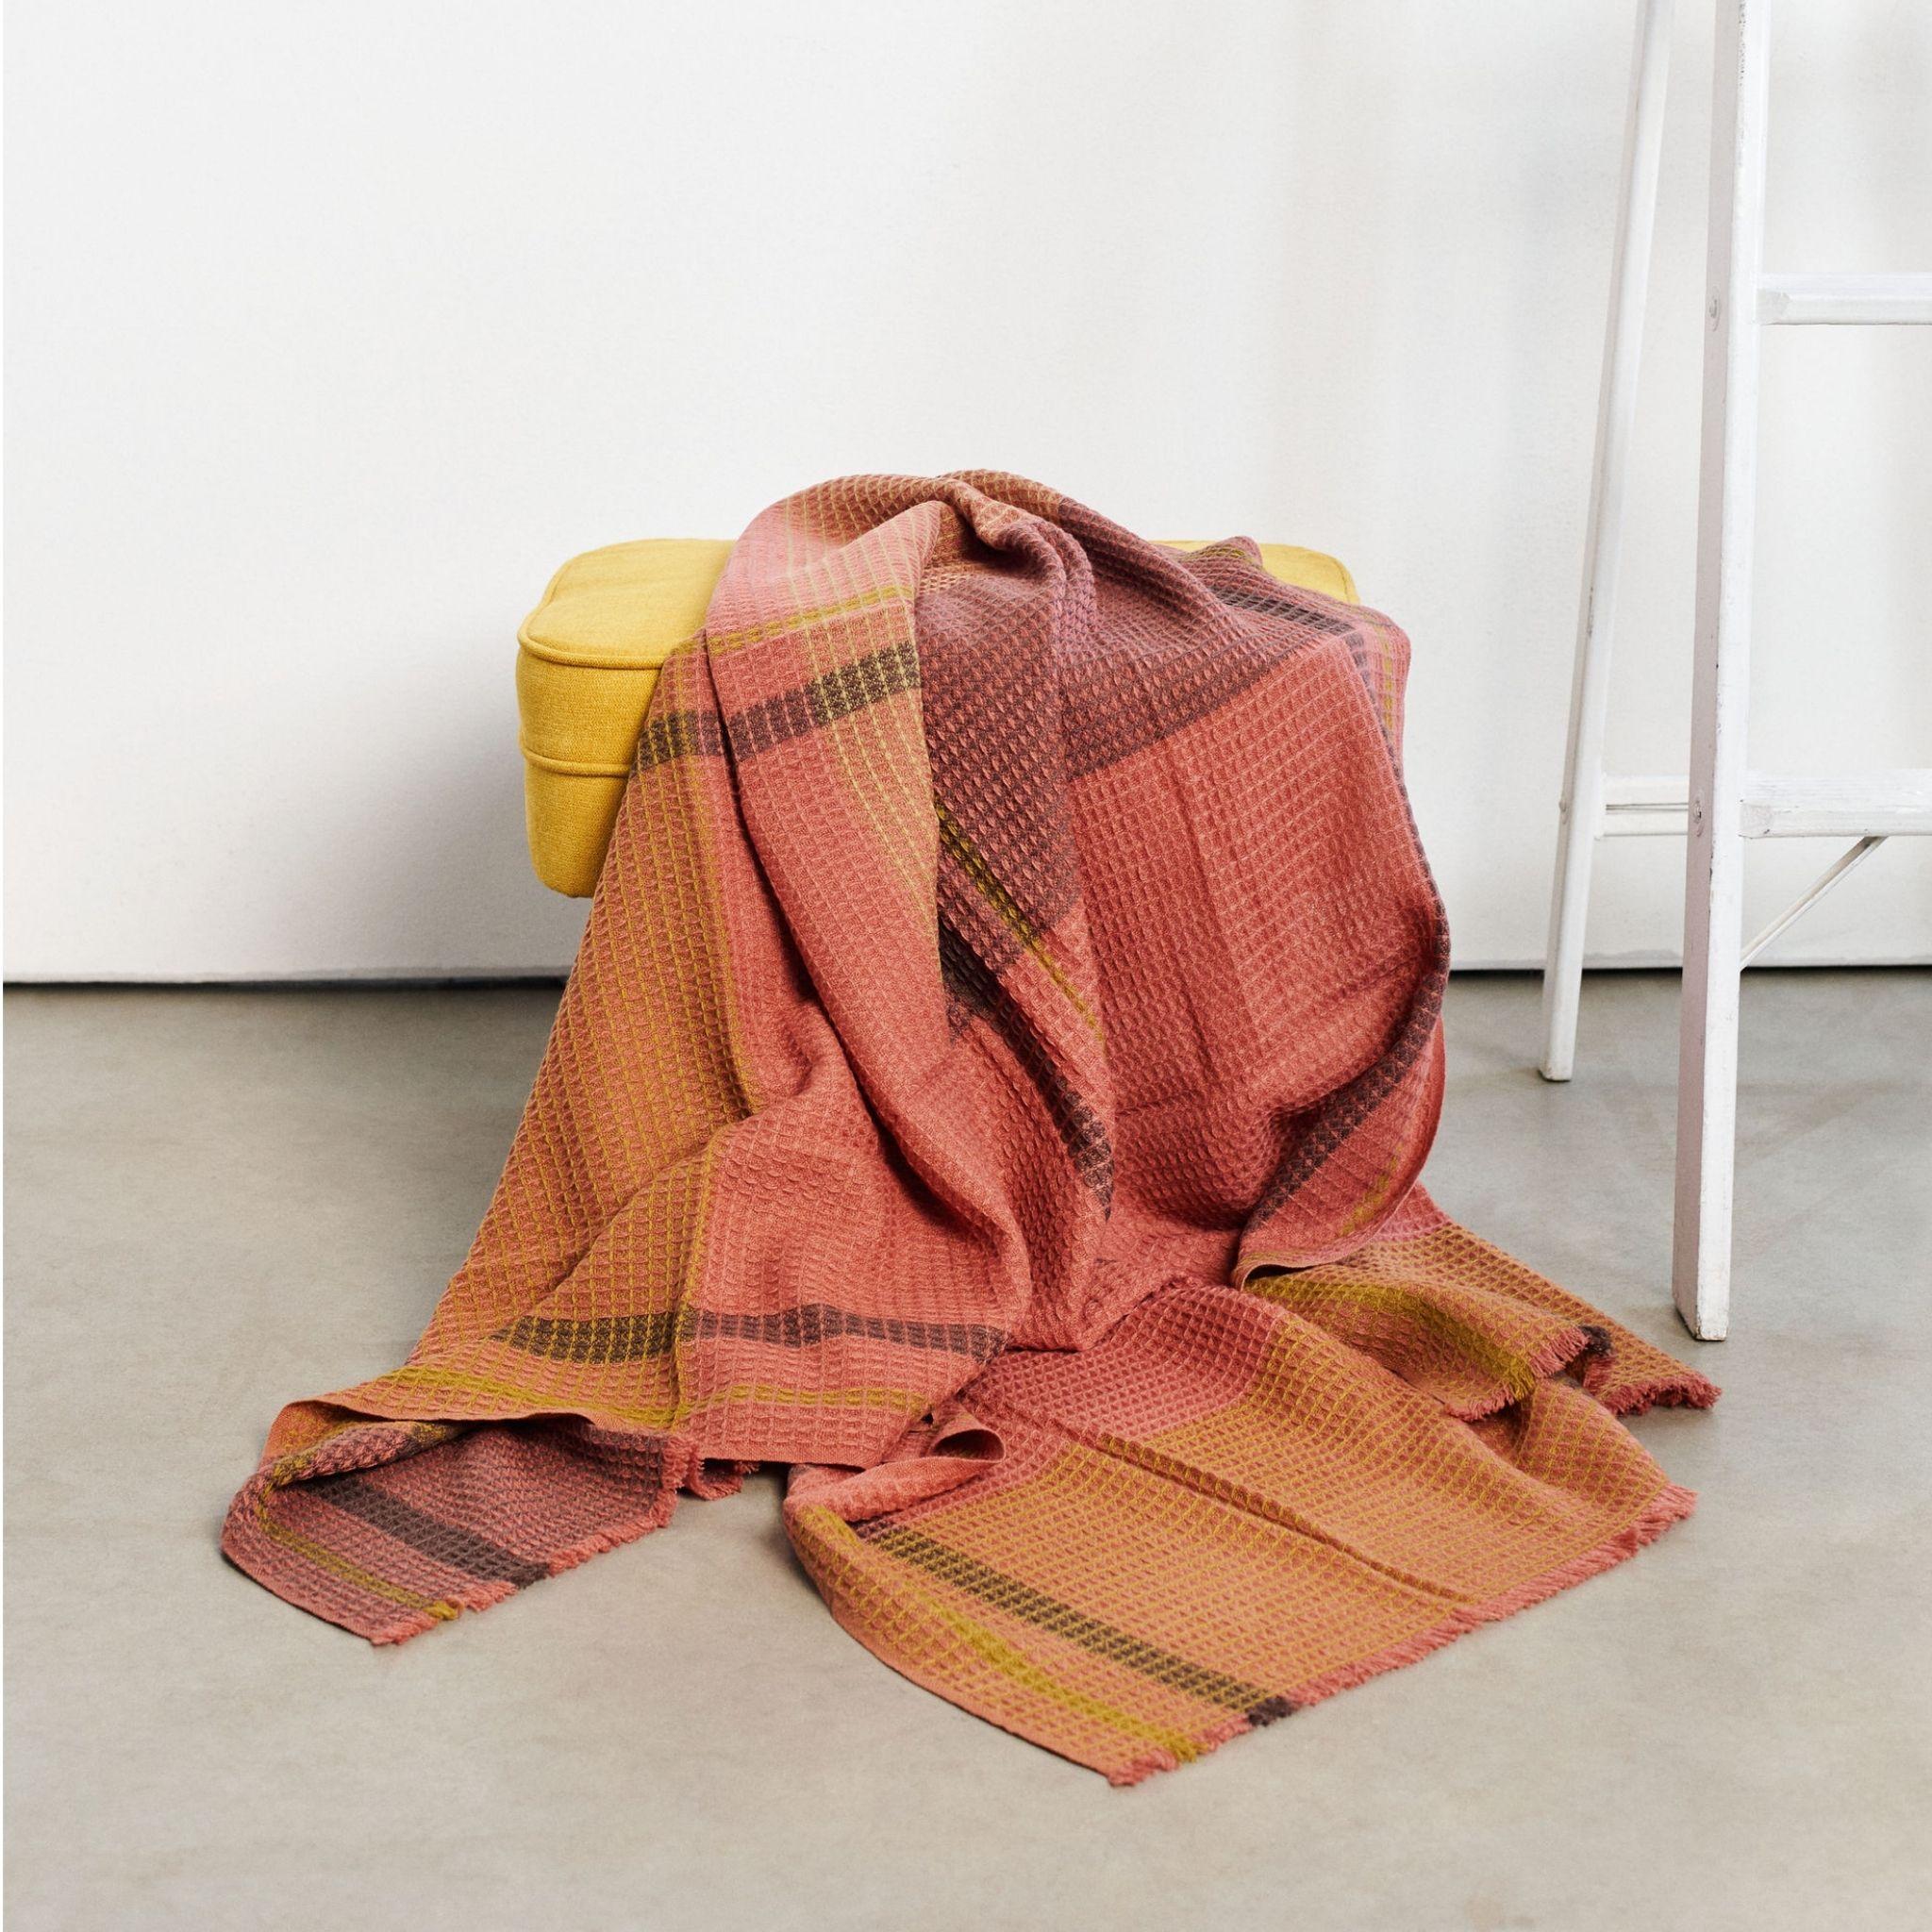 Cocoon ist eine sorgfältig handgewebte Decke mit Waffelmuster, die von Kunsthandwerkern in Nepal hergestellt wird. Das Design dieses ruhigen Überwurfs mit einem erdigen Farbakzent ,  besteht aus einem subtilen Karomuster in Waffeloptik, dessen